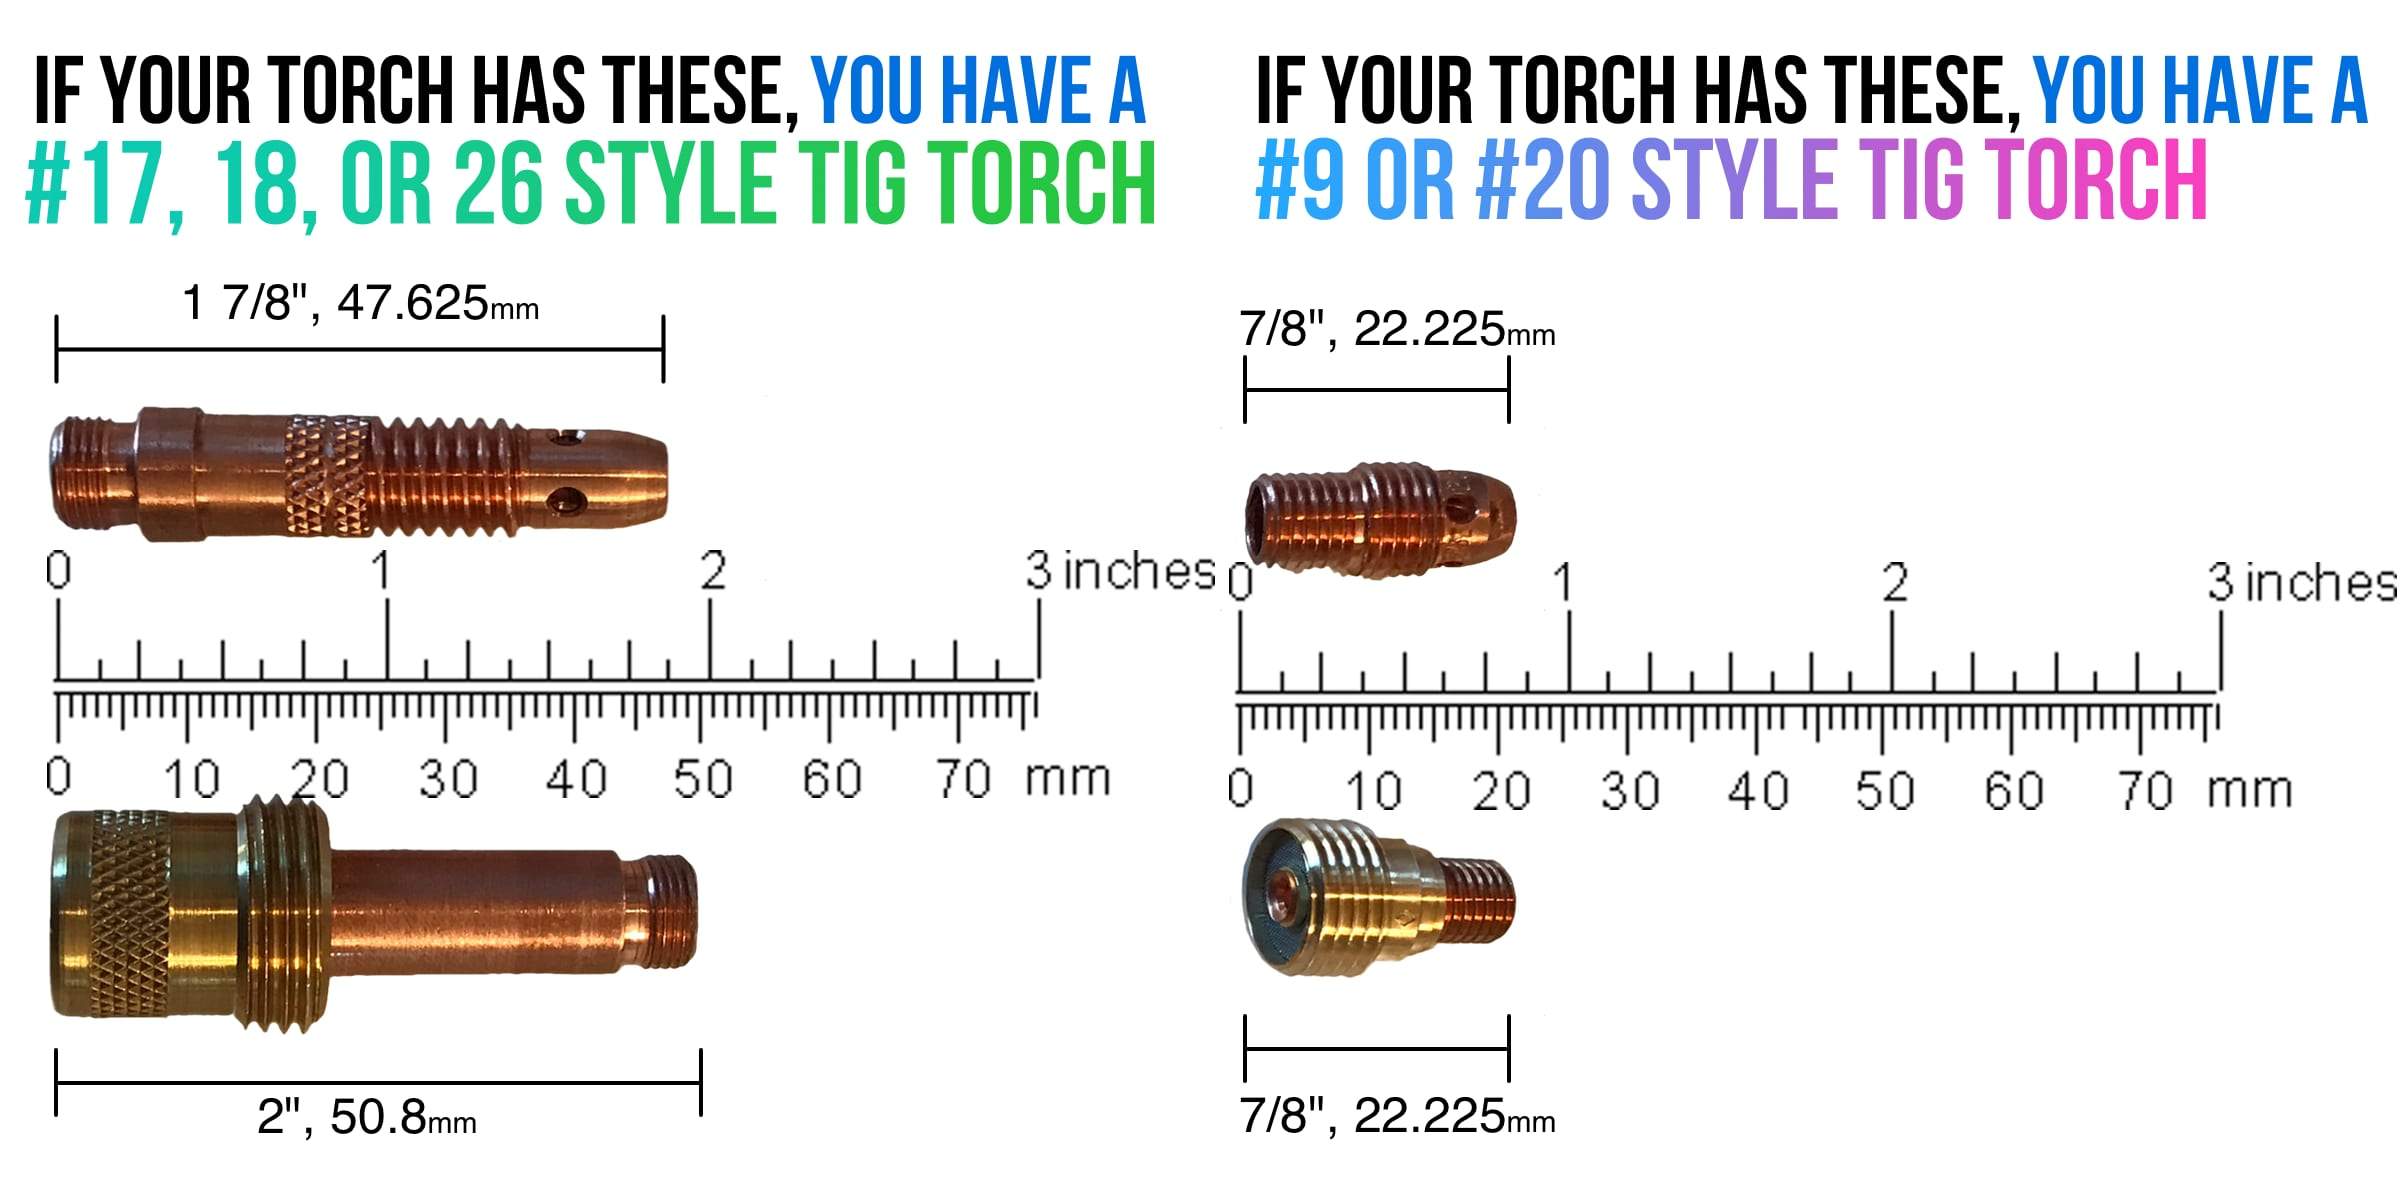 Weldmonger® Furick TIG Arsenal Kit For #17, 18, 26 Torches